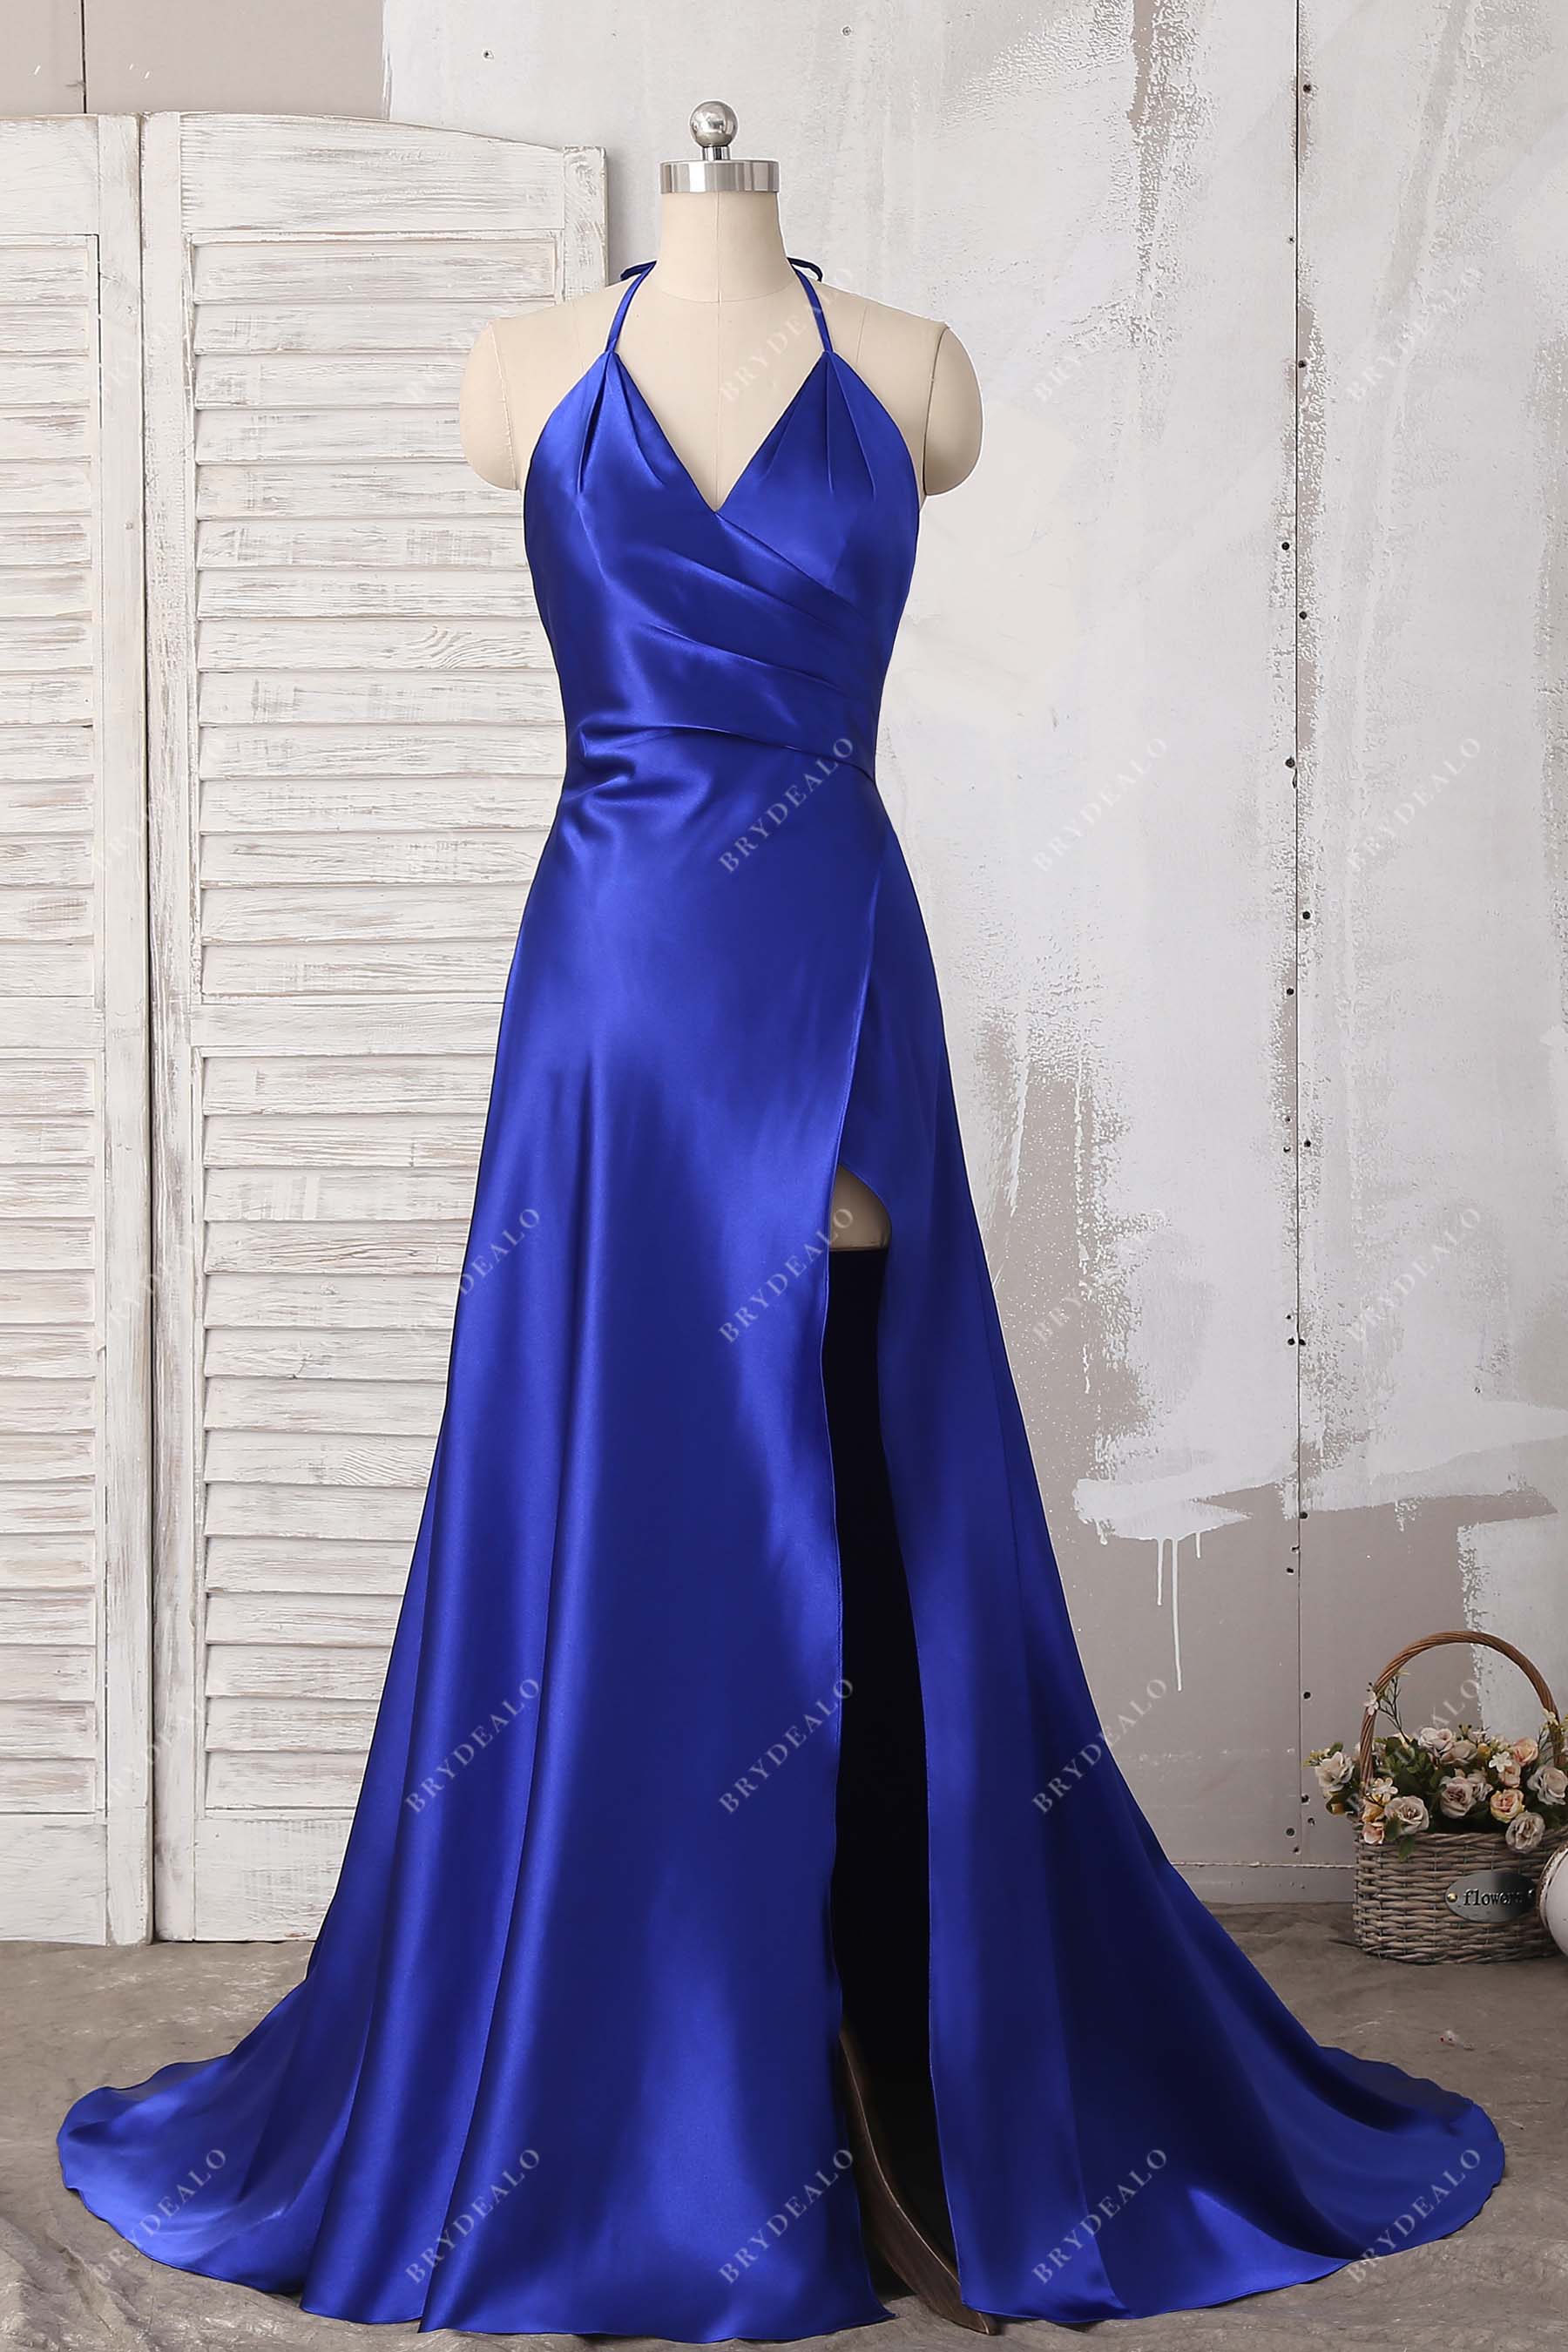 royal blue satin A-line slit prom dress